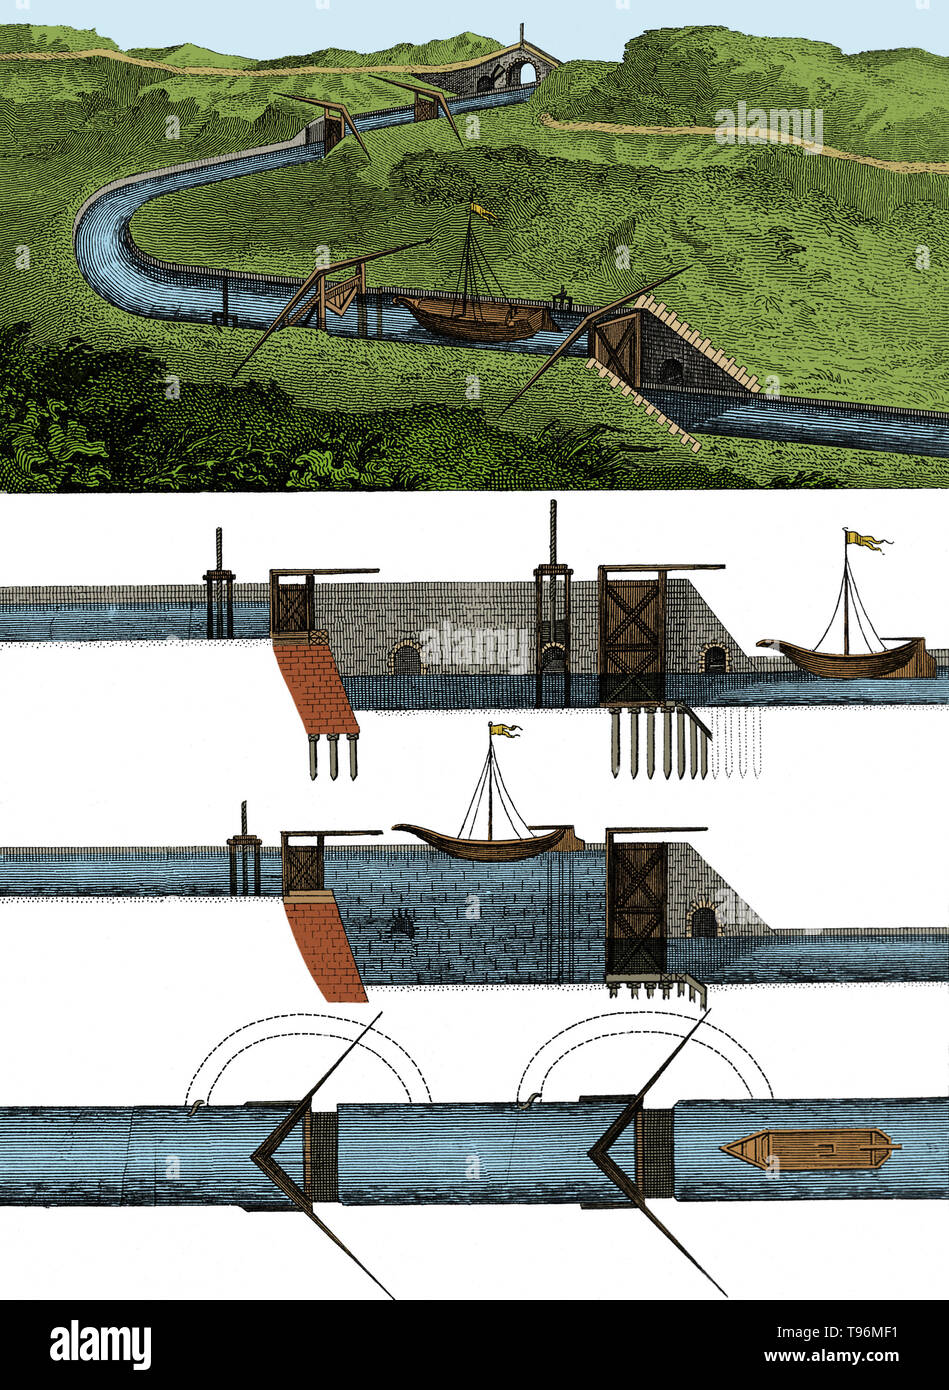 Ein Kanal durch hügeliges Gelände (oben) und Diagramme von Canal Locks und Druckregulierventil Mechanismen (unten). Historische Gravur. Stockfoto